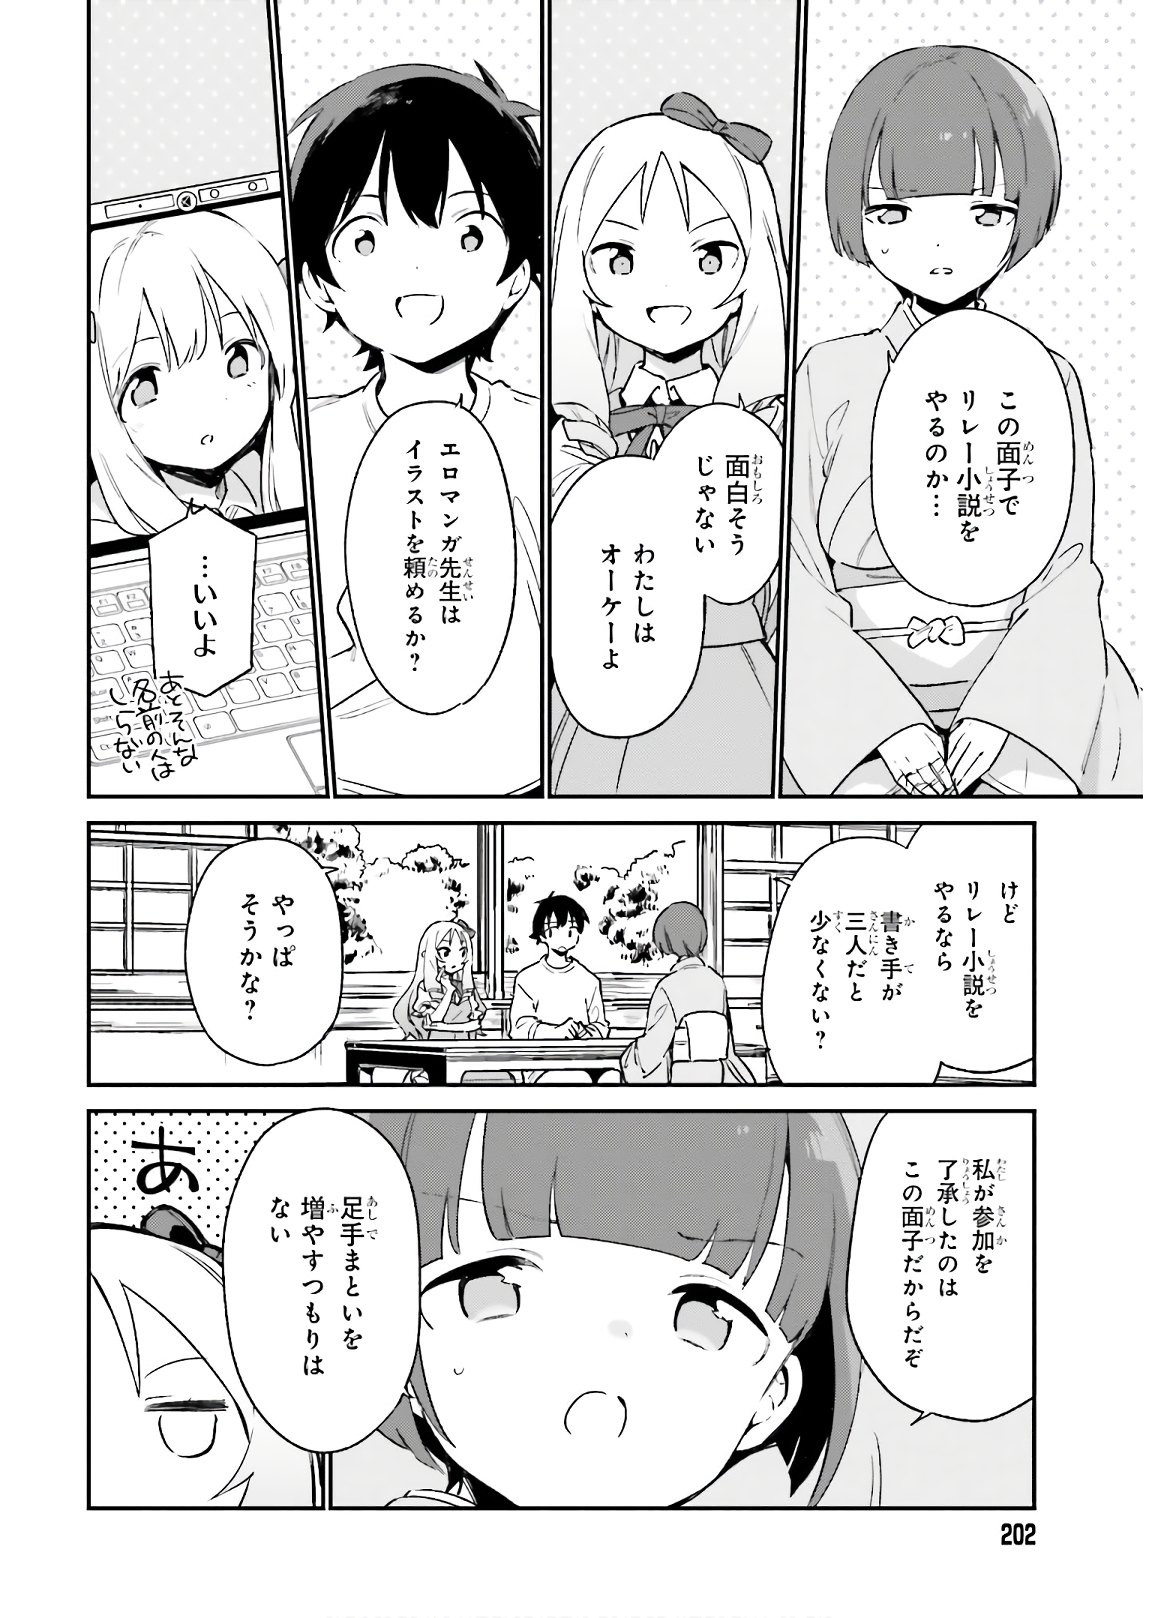 Ero Manga Sensei - Chapter 70 - Page 2